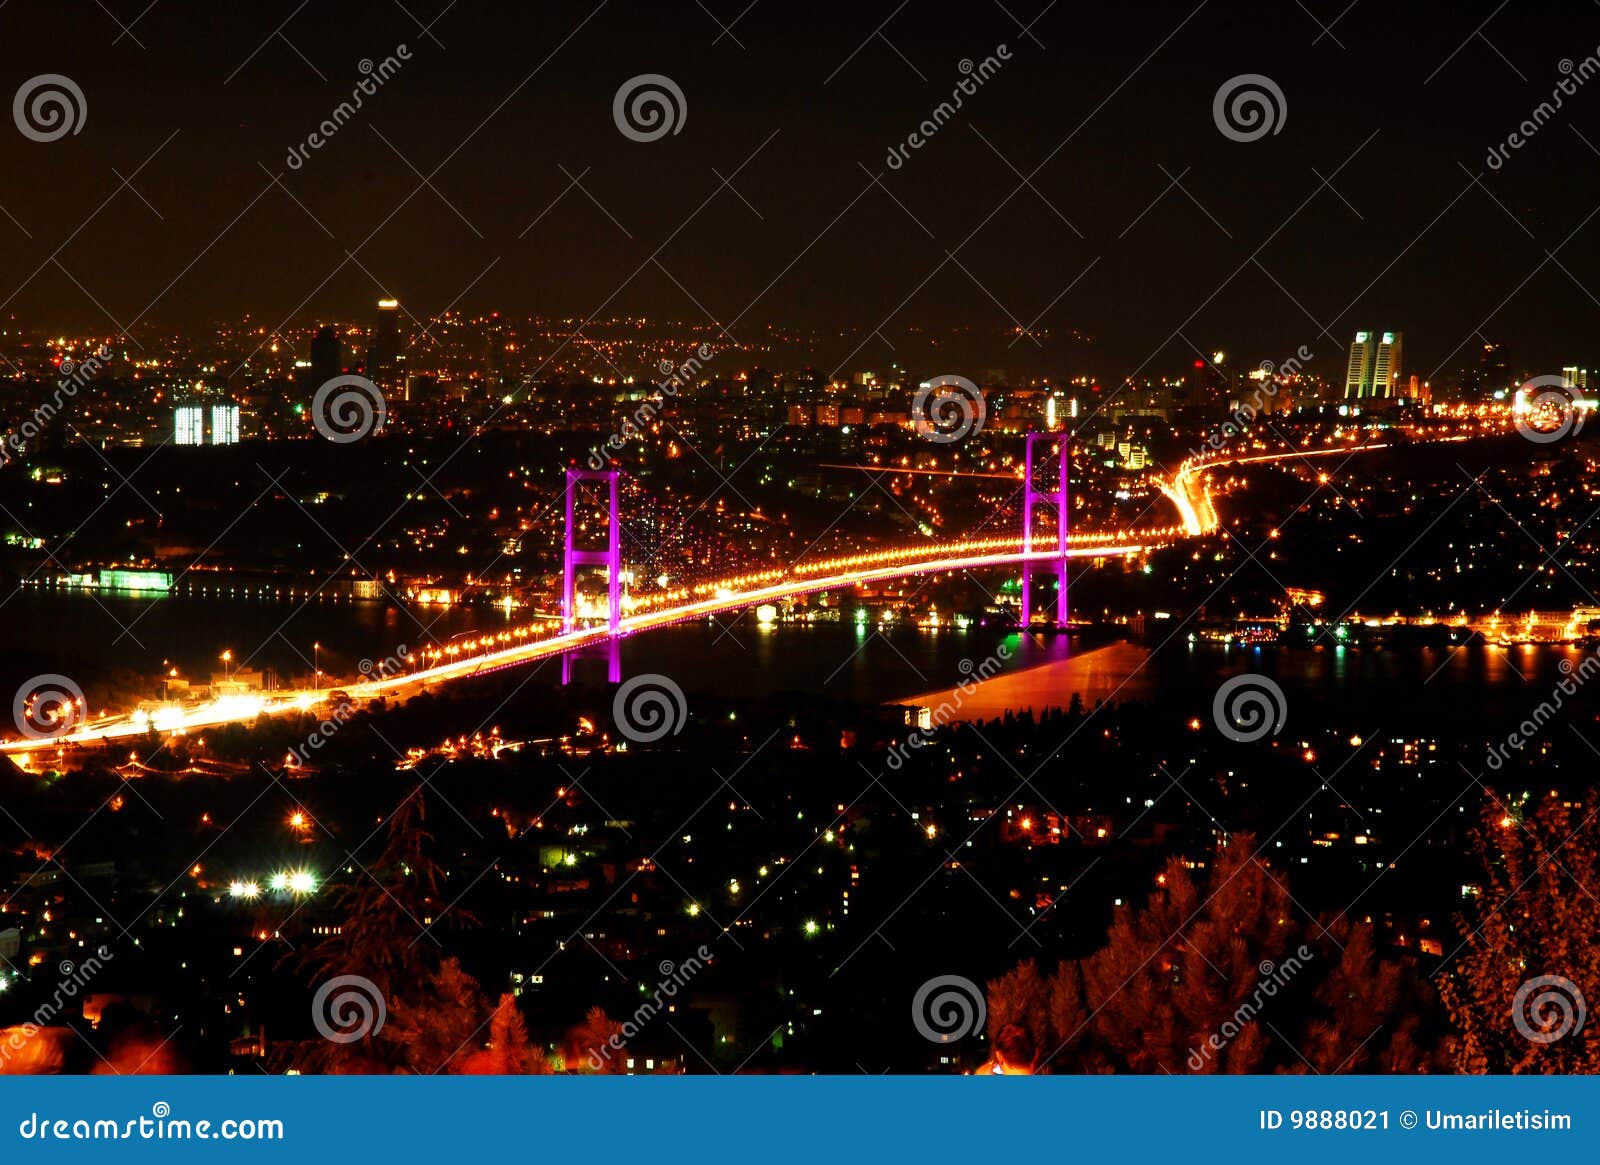 bosporus bridge istanbul